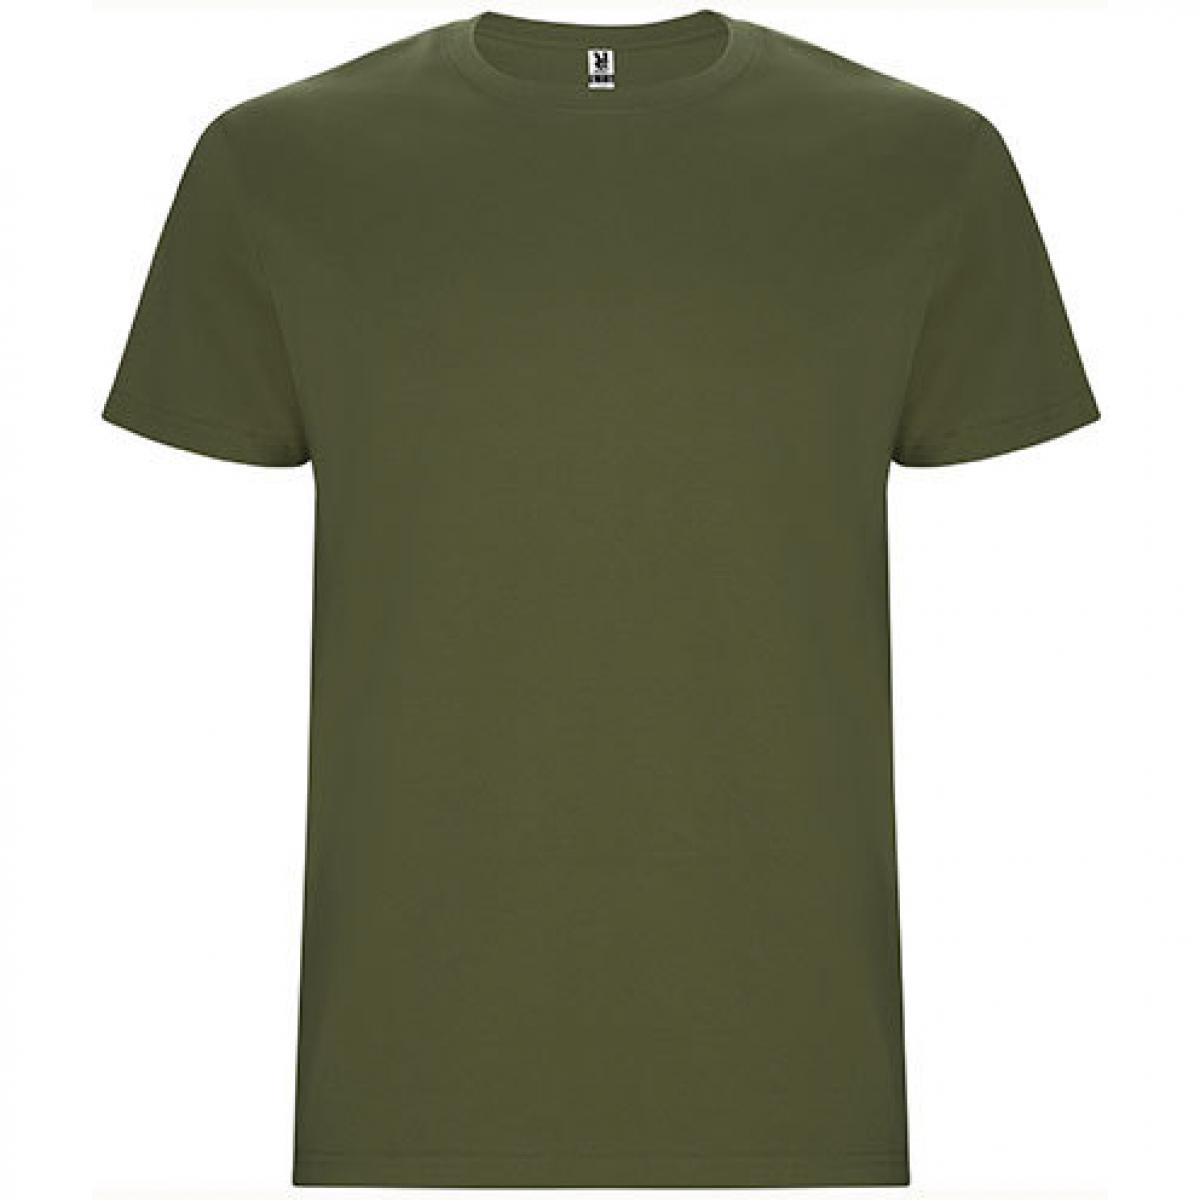 Hersteller: Roly Herstellernummer: CA6681 Artikelbezeichnung: Stafford T-Shirt - Doppellagiger Rundhalskragen Farbe: Army Green 15